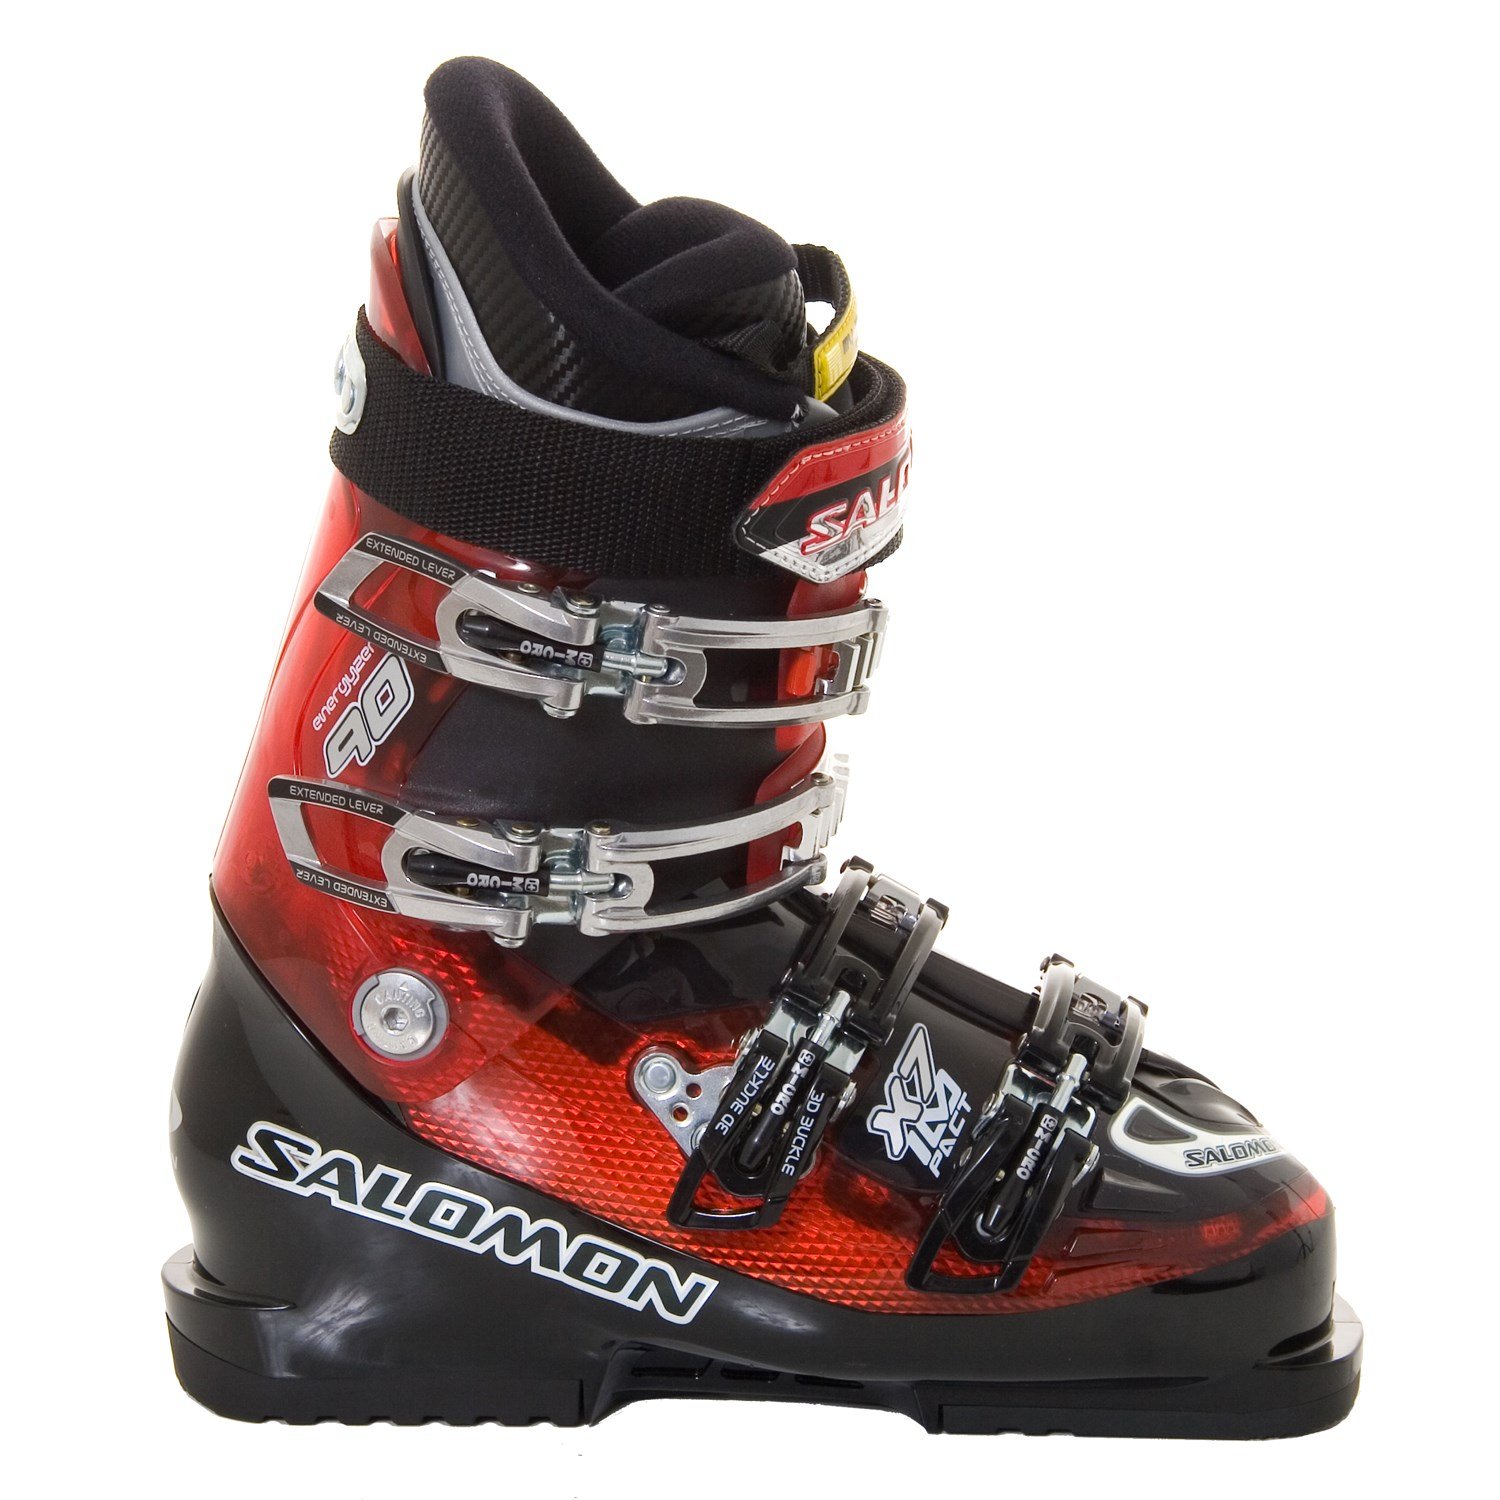 Nord Bryde igennem Et hundrede år Salomon Impact X7 Ski Boots 2009 | evo